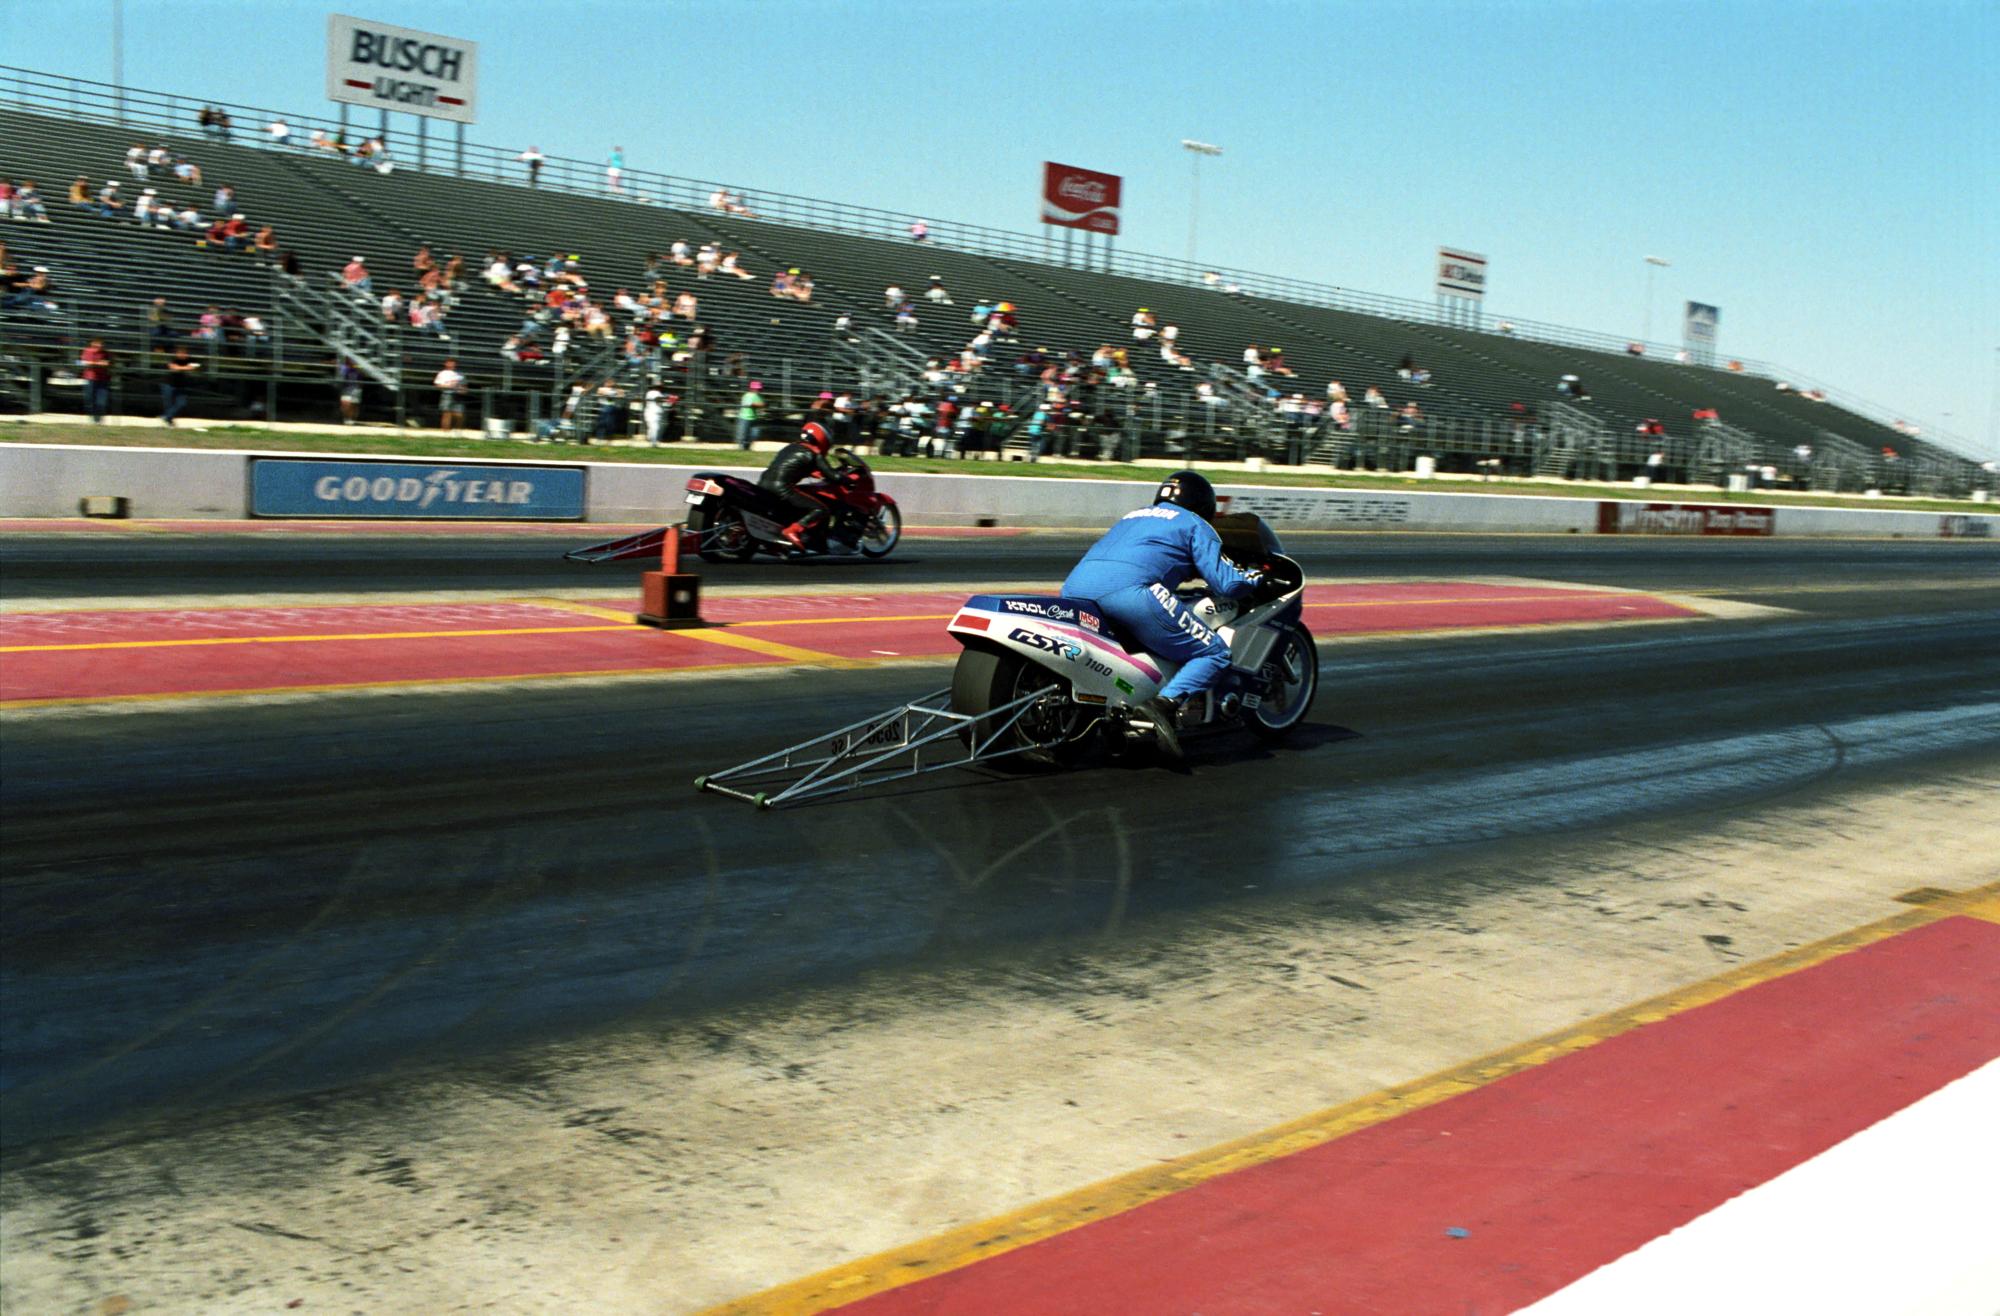 Texas Motor Drag Racing (1991) - Texas Motorcycle Drag Racing #2